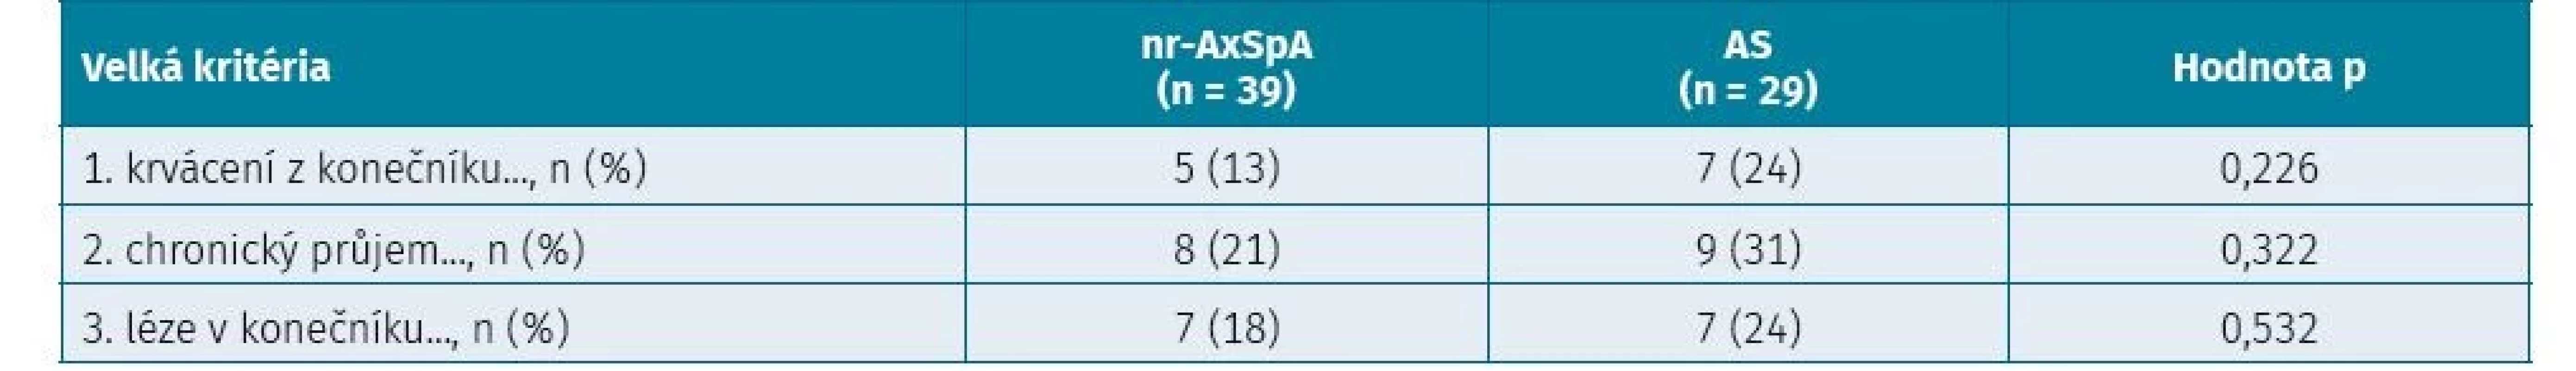 Velká kritéria hodnotící střevní a mimostřevní obtíže u pacientů s neradiografickou axiální spondyloartritidou
a ankylozující spondylitidou (hodnoceno chí-kvadrát testem)